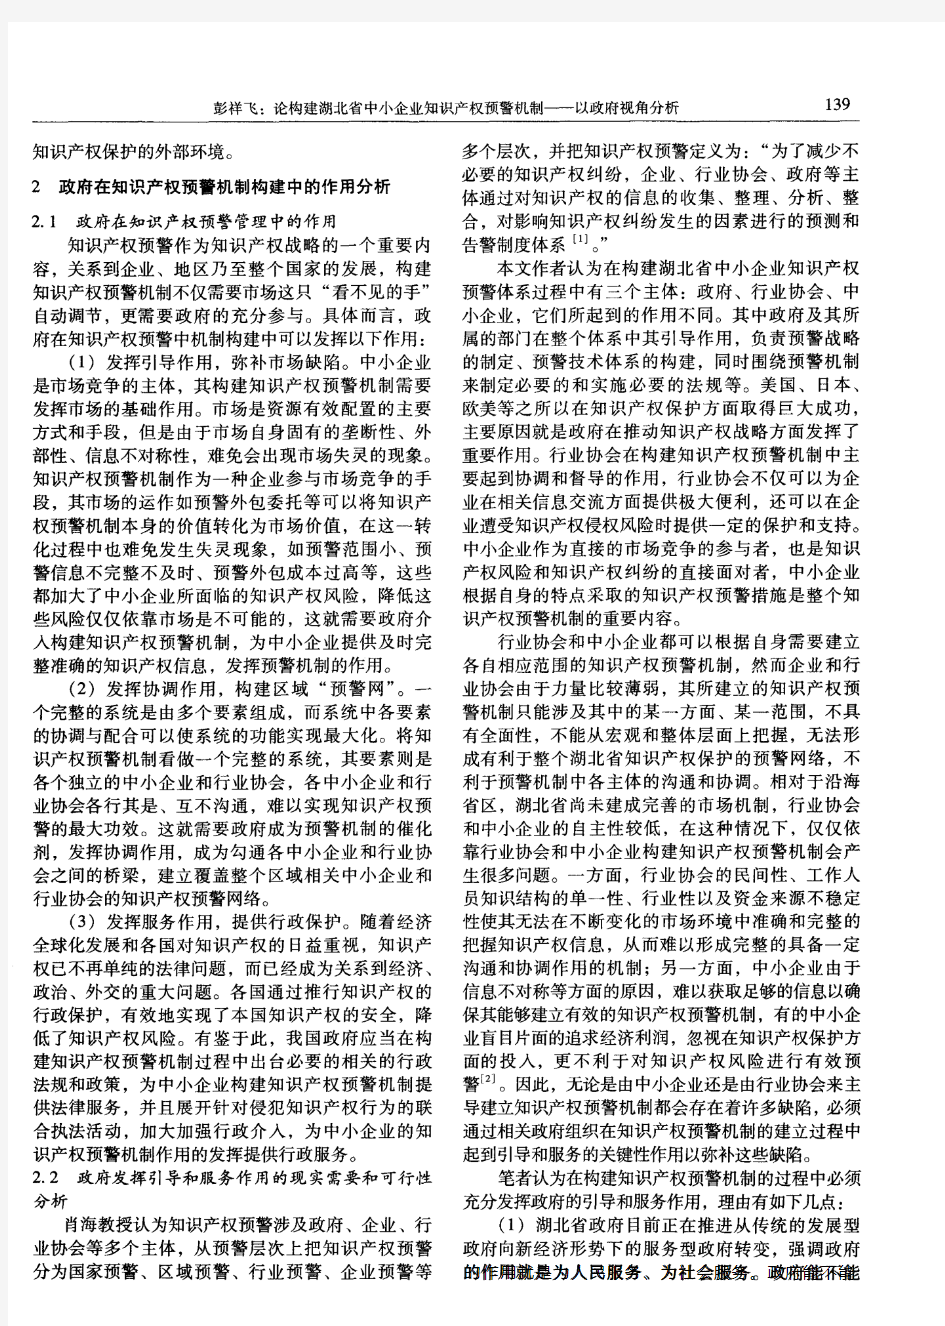 论构建湖北省中小企业知识产权预警机制——以政府视角分析